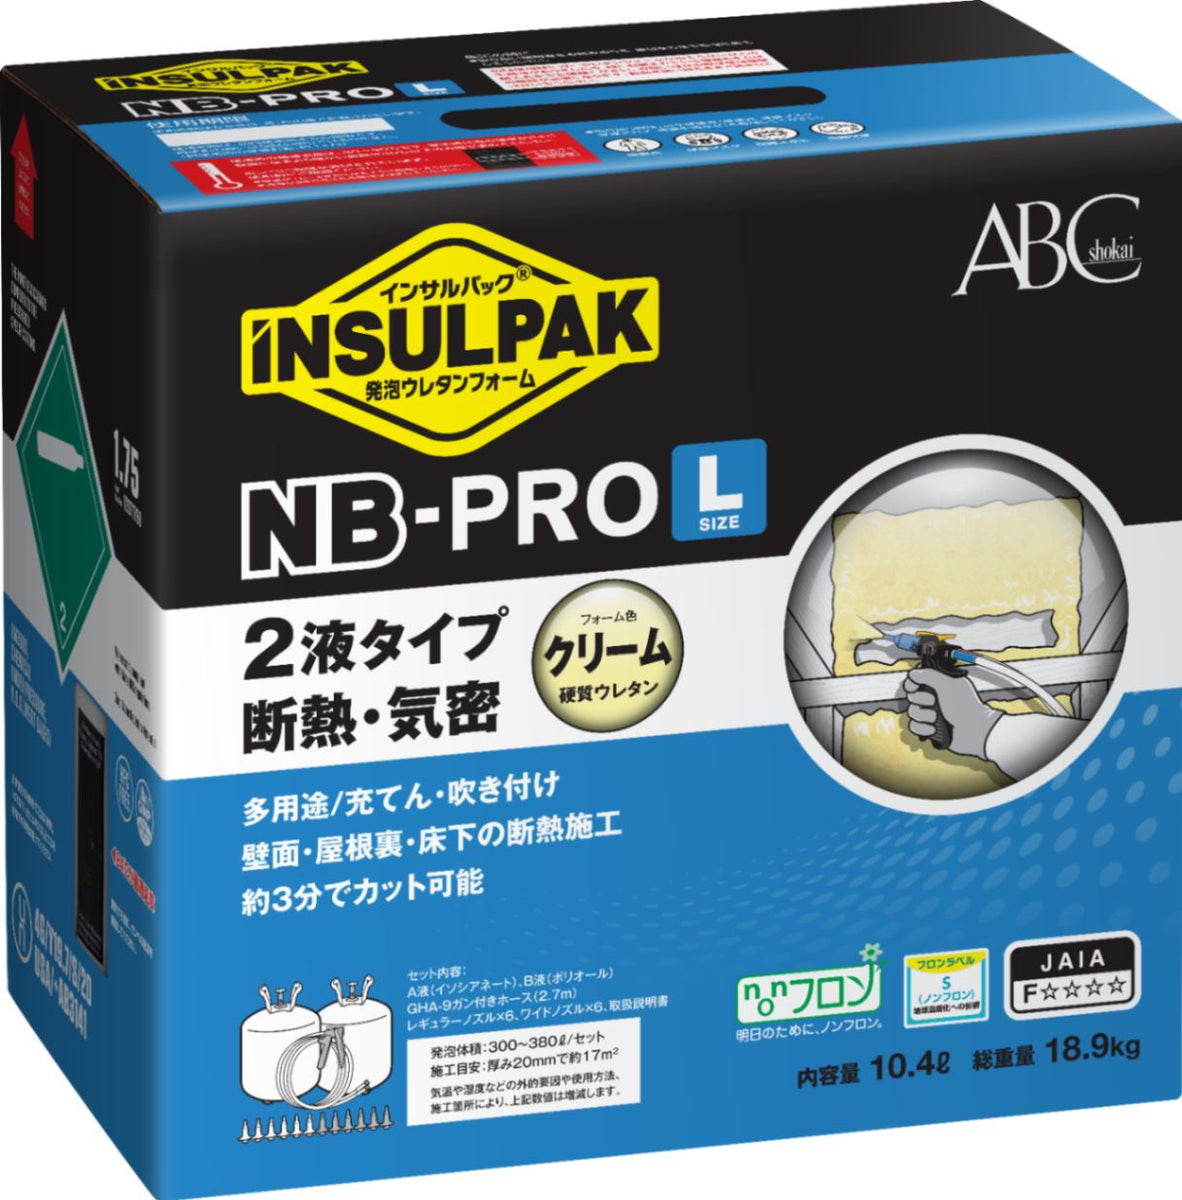 インサルパック NB-PRO/L 2液ノンフロンタイプ NBL 【エービーシー商会